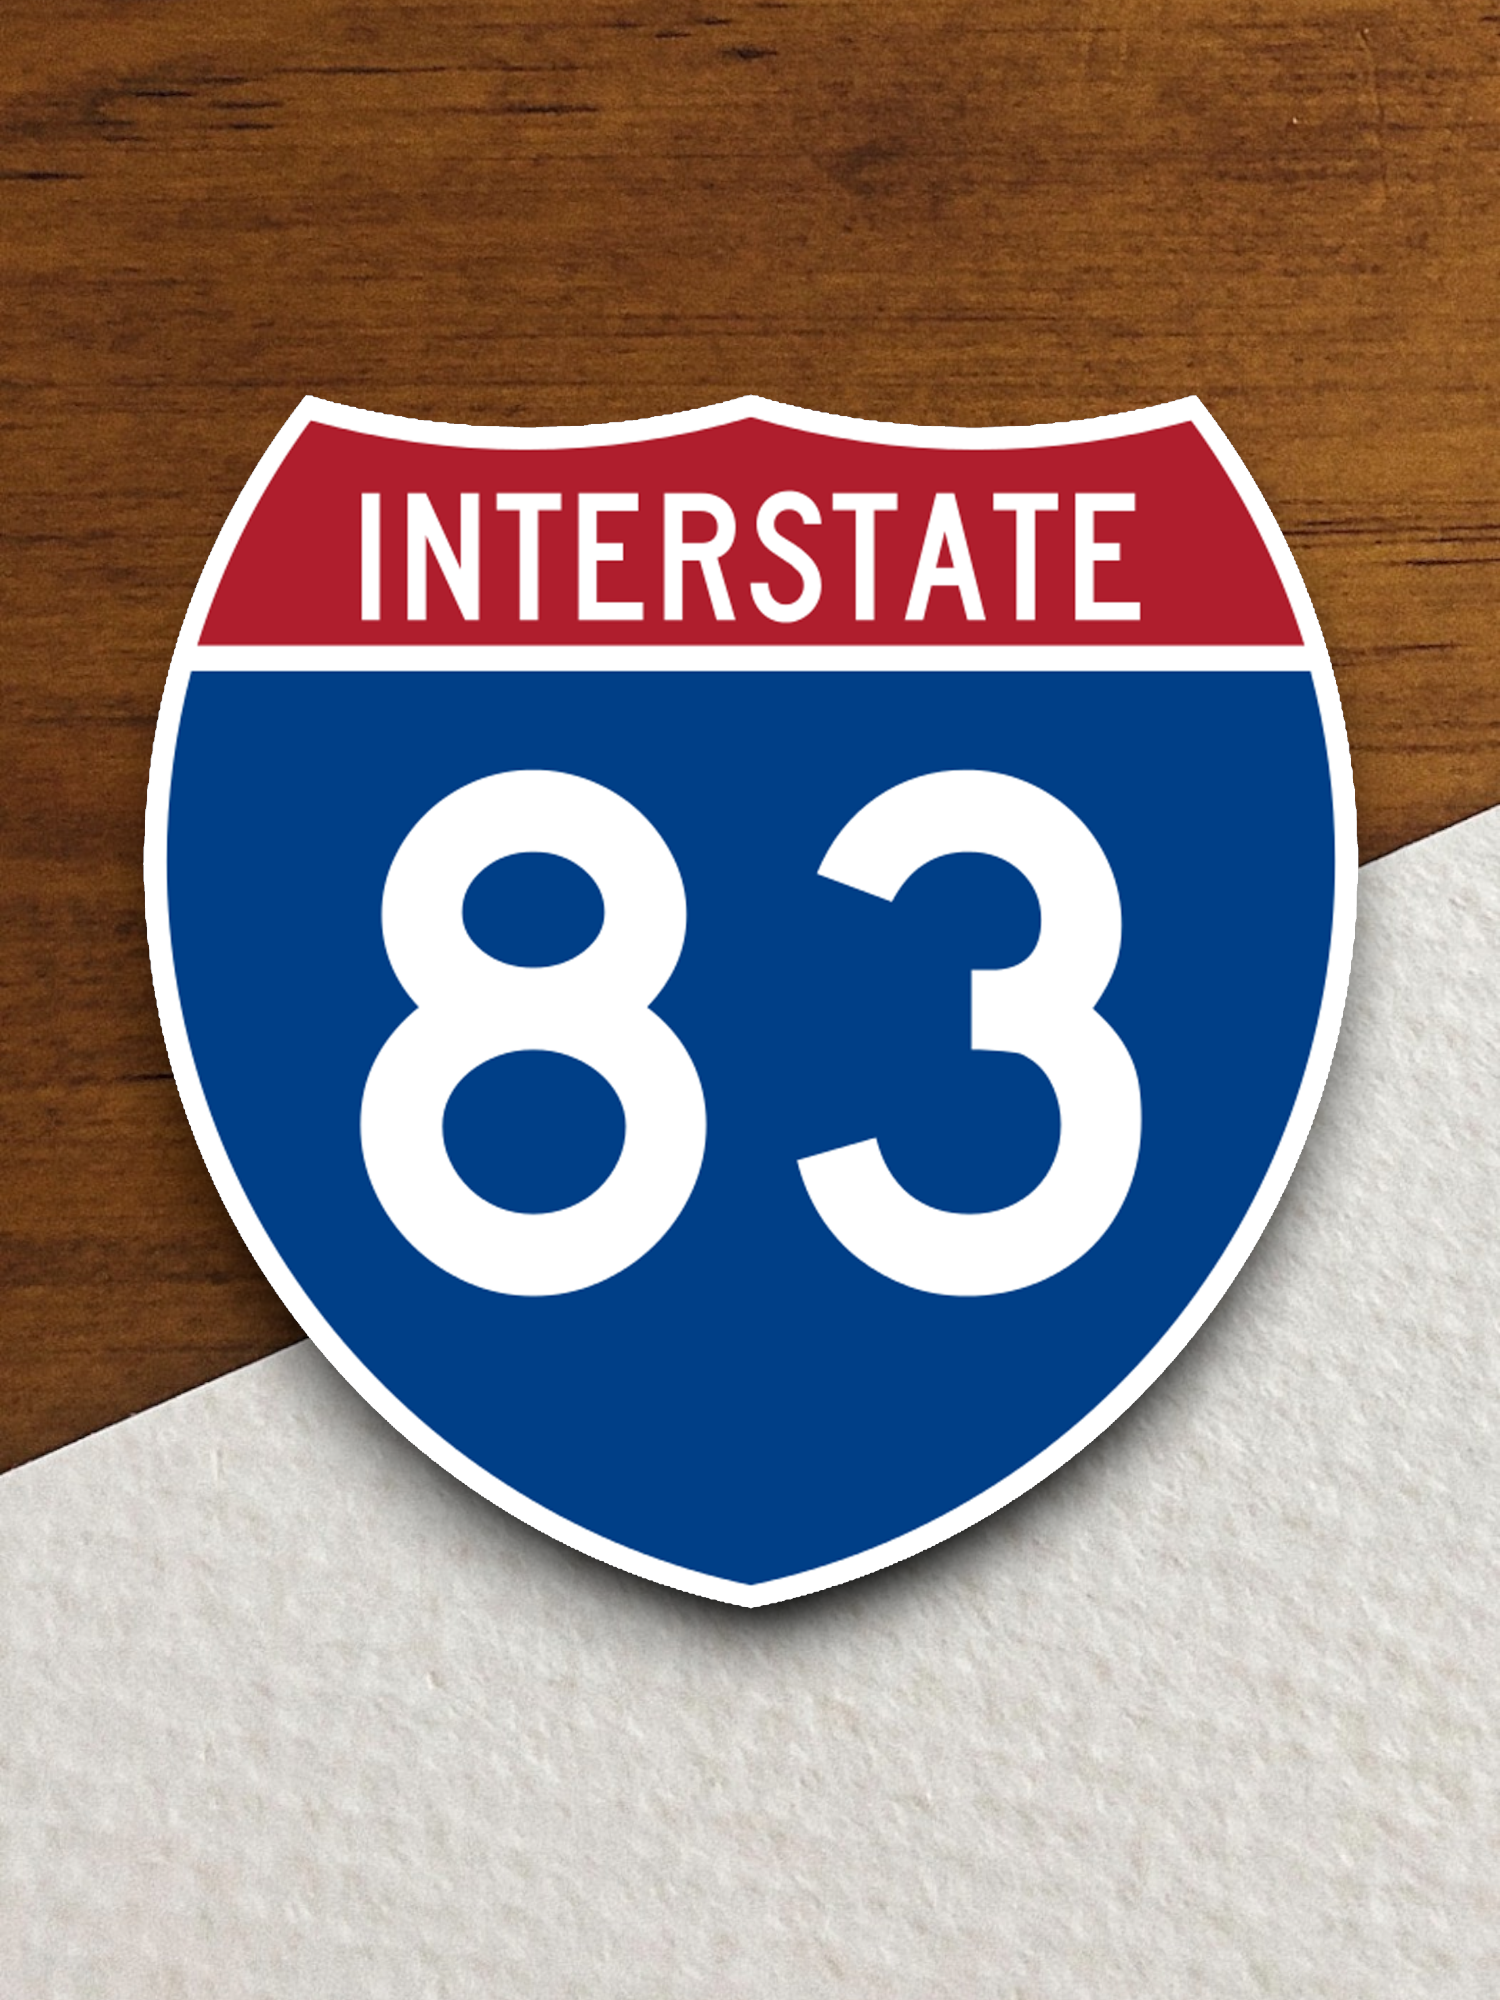 Interstate I-83 Sticker